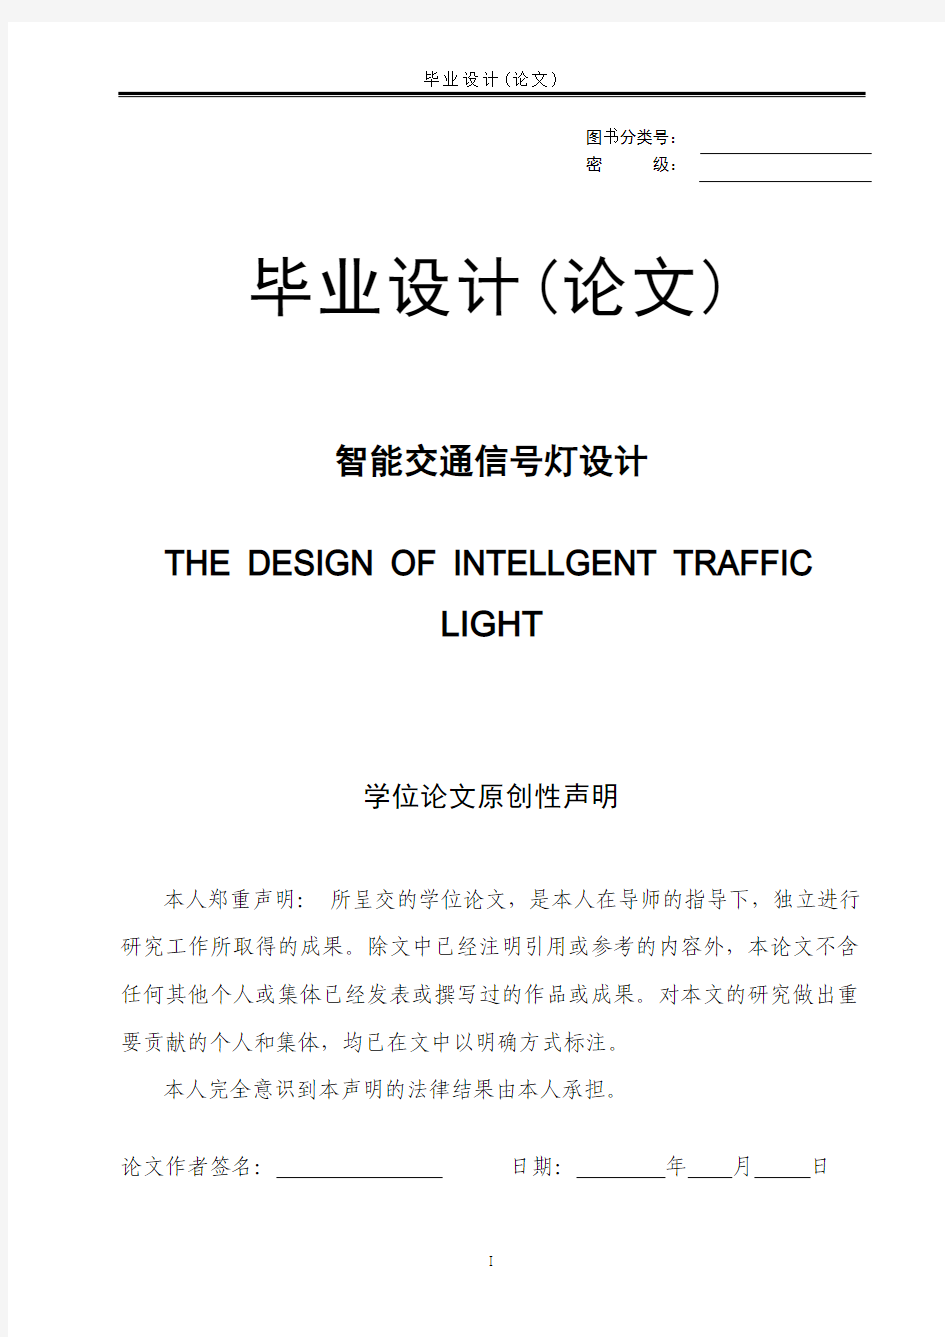 毕业设计--智能交通信号灯设计